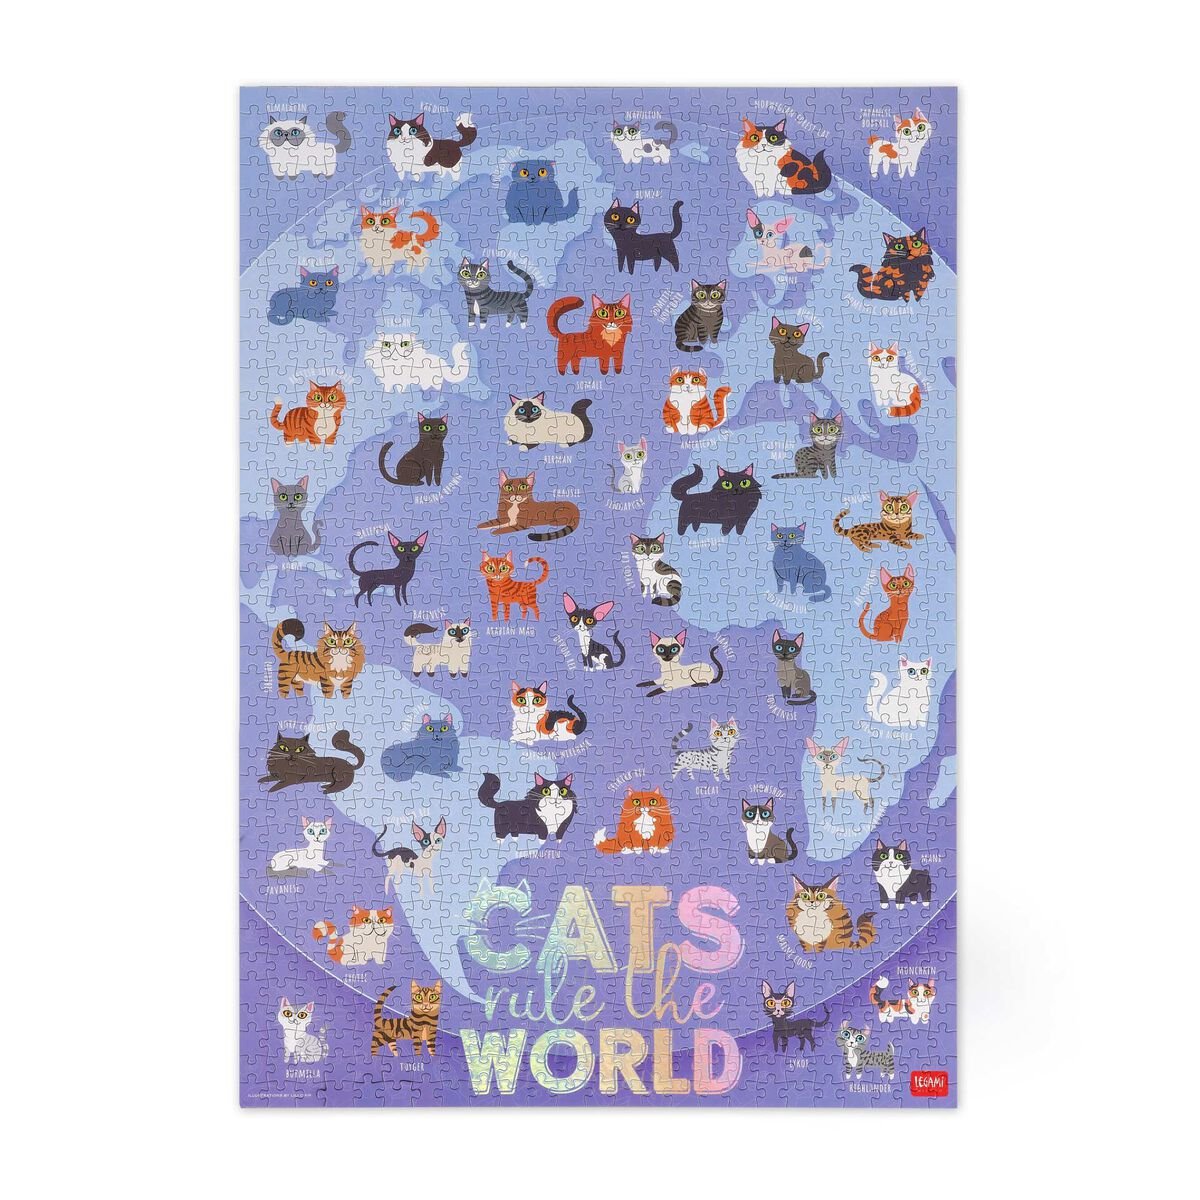 Puslespil med 1000 brikker, Verdens katte